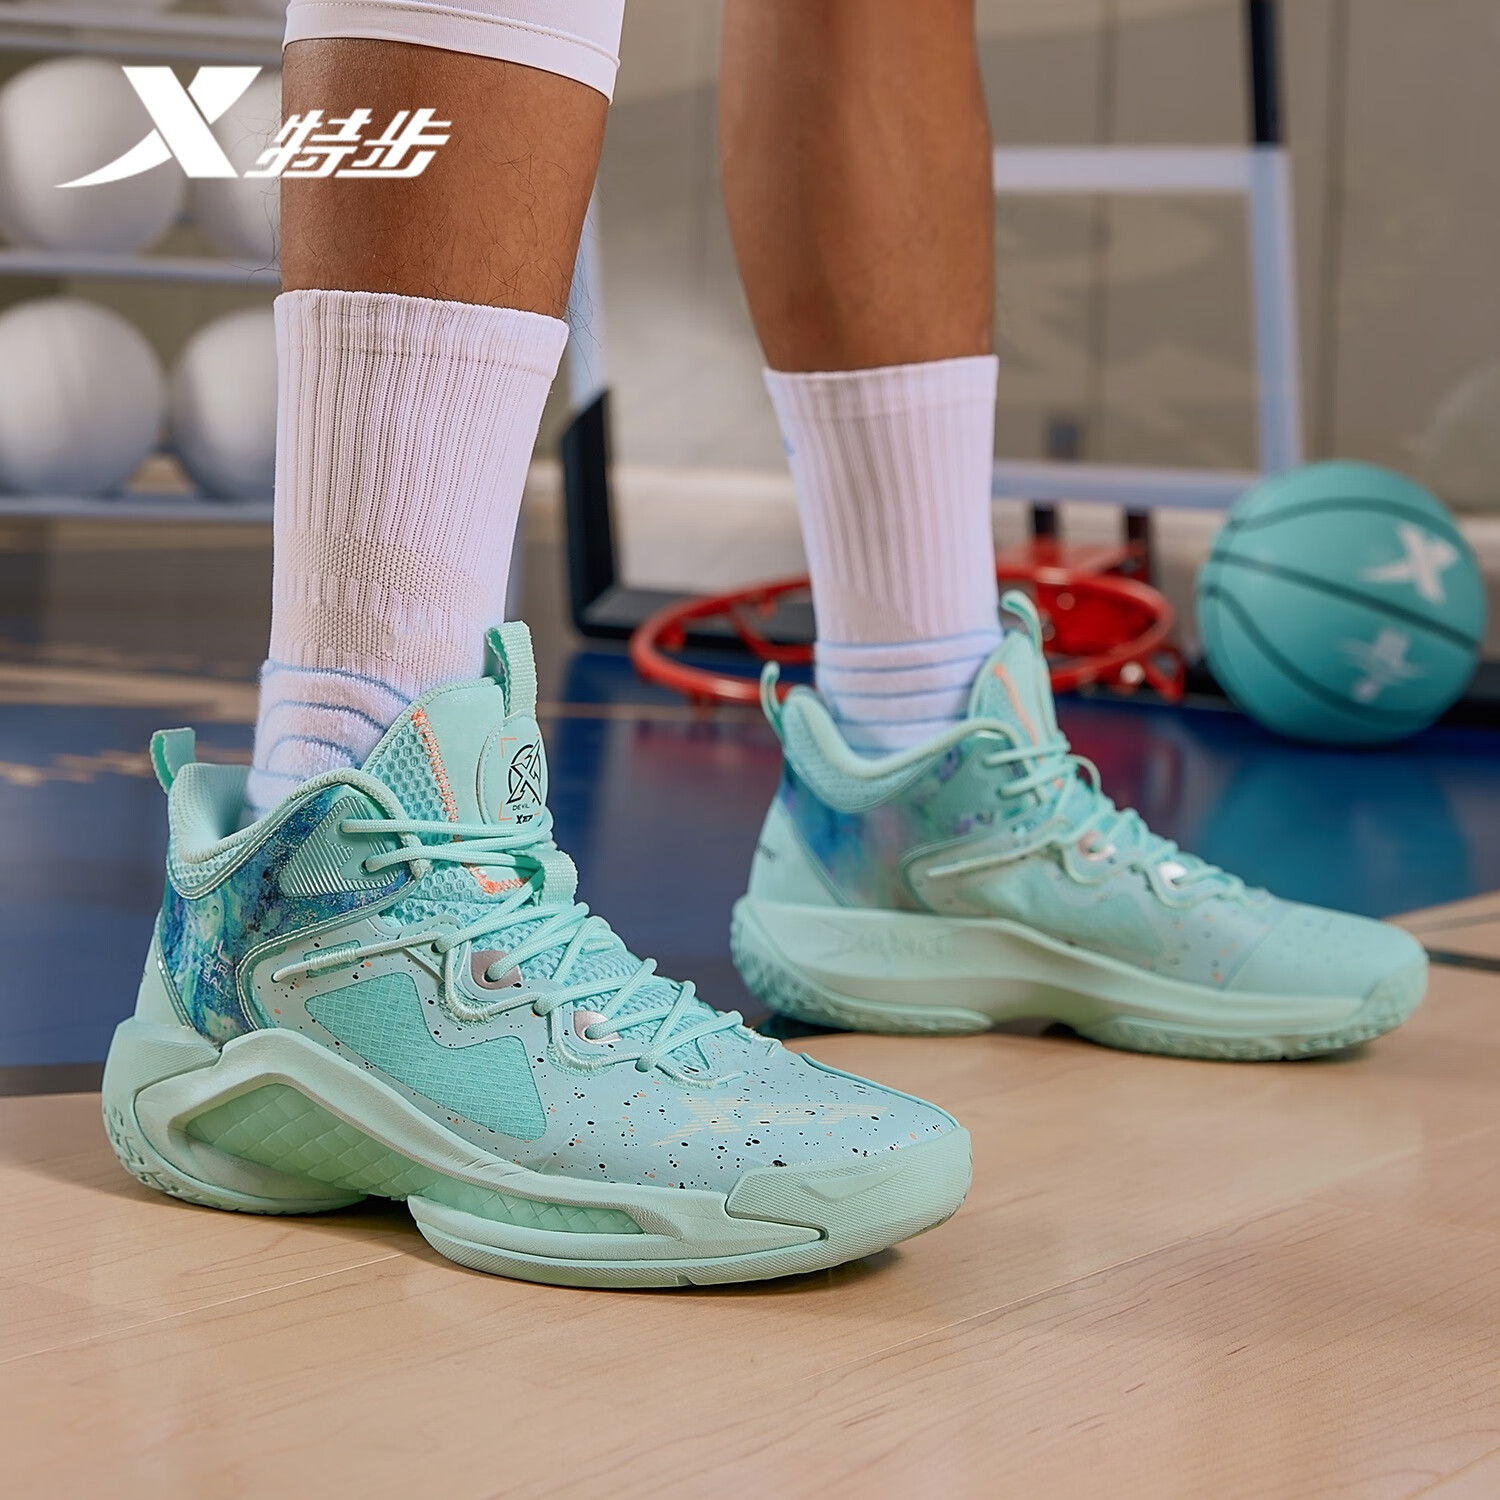 XTEP 特步 男鞋奇袭篮球鞋男夏新品舒适耐磨运动鞋高帮实战篮球鞋子 绿 43 15